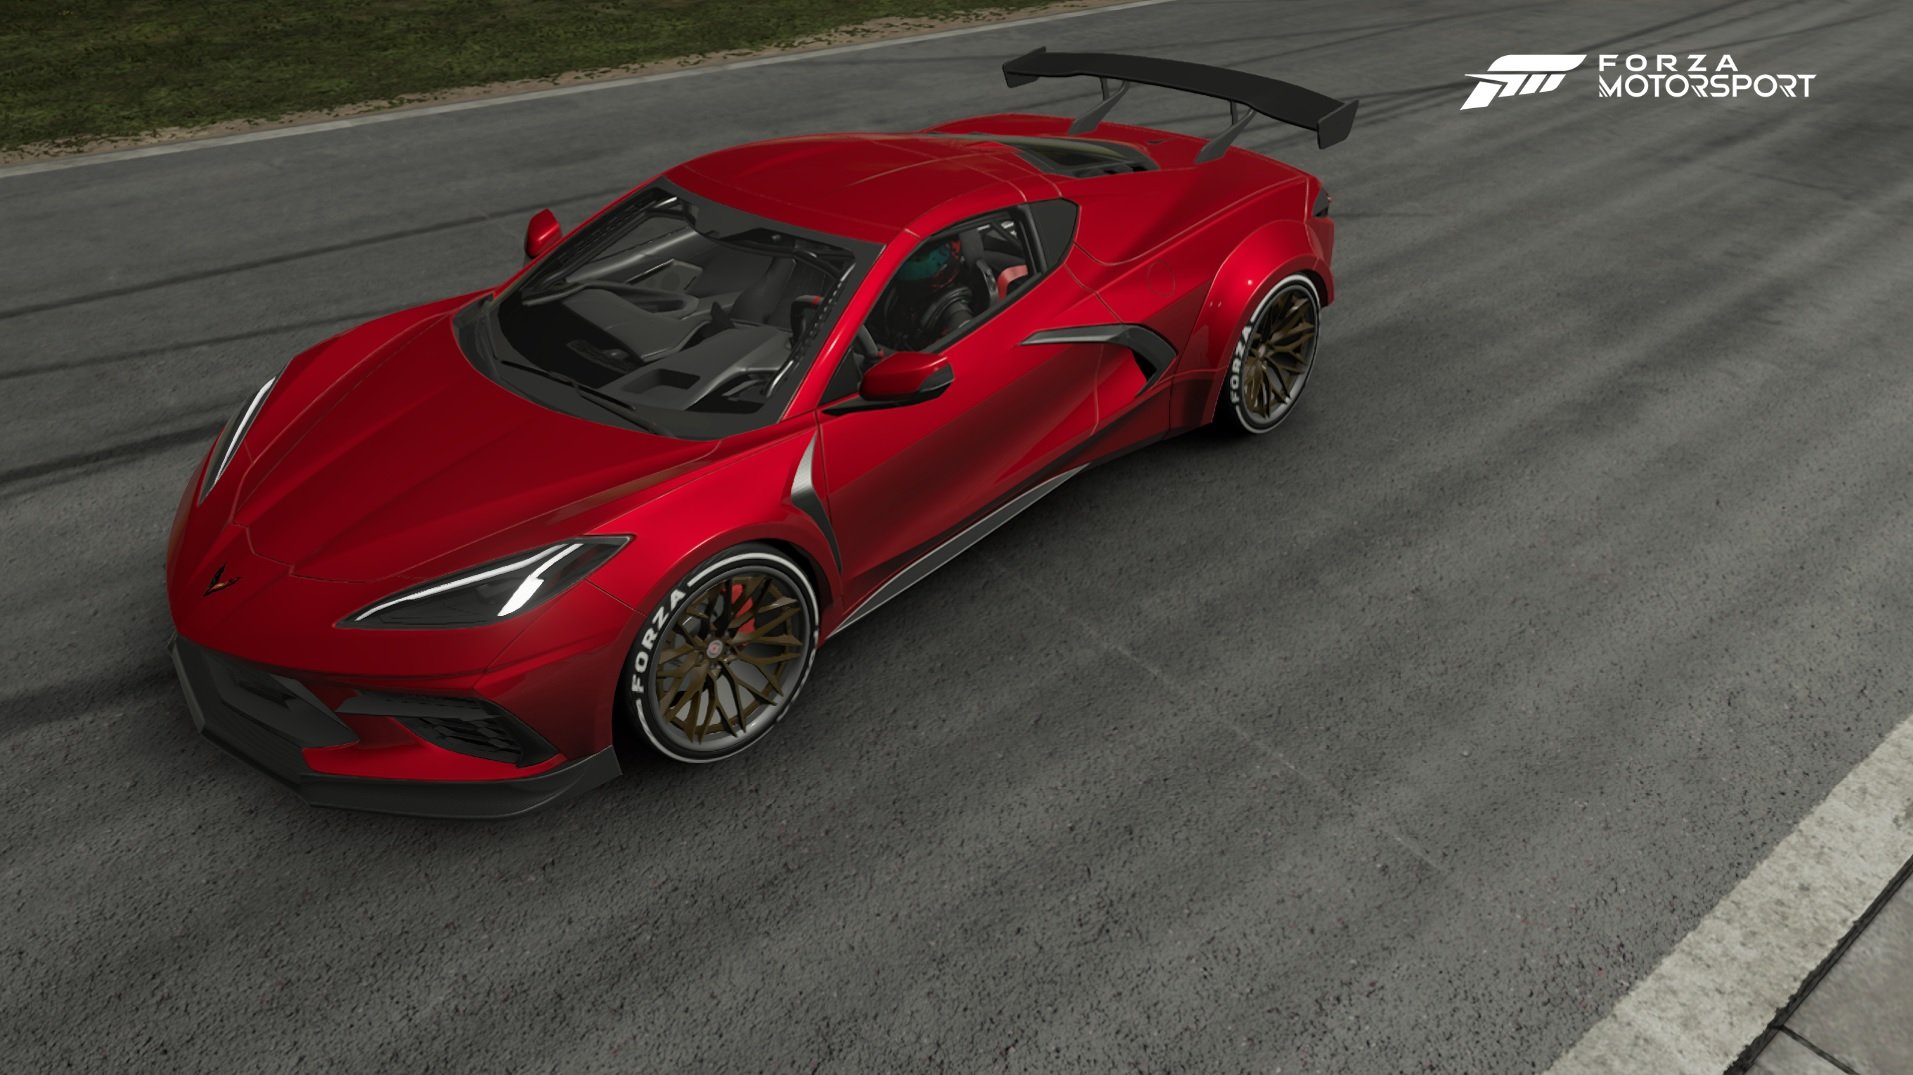 Não é somente o visual dos carros que ficou ainda mais real em Forza Motorsport